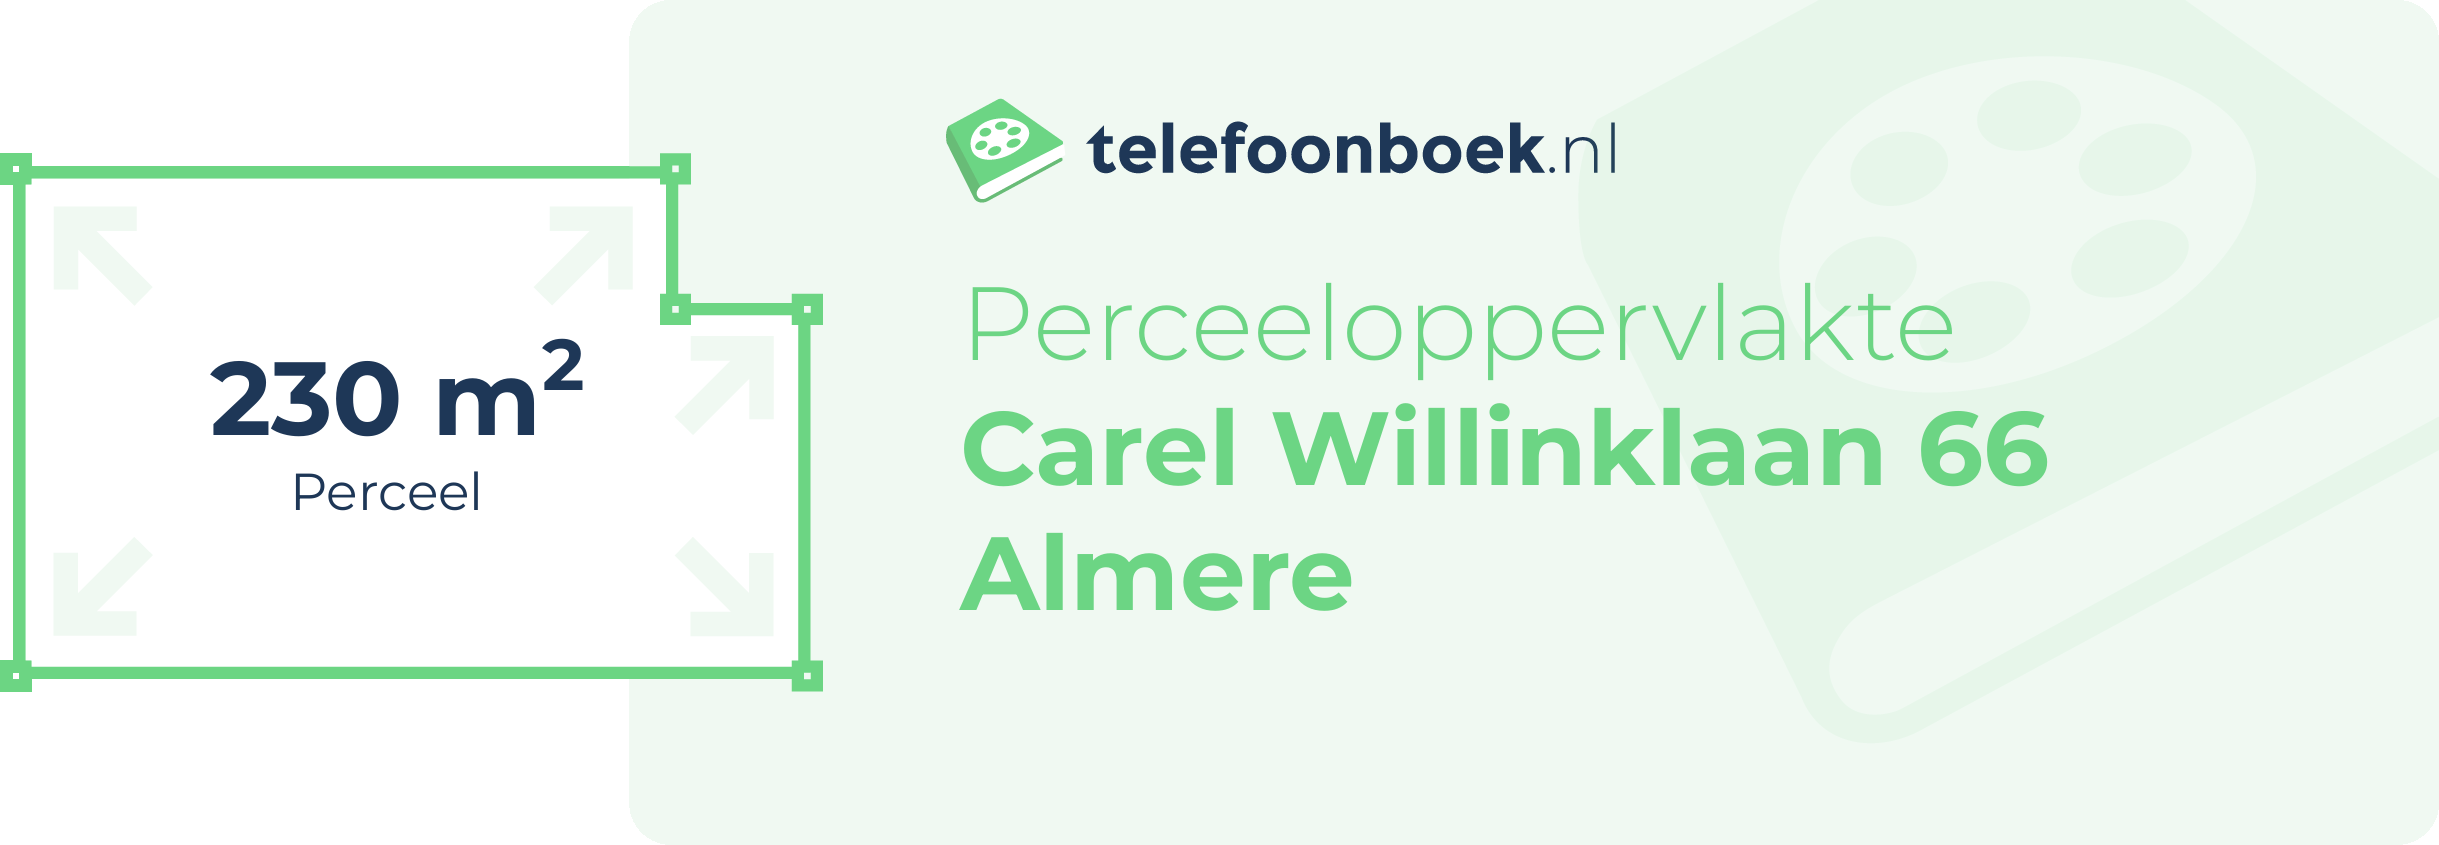 Perceeloppervlakte Carel Willinklaan 66 Almere